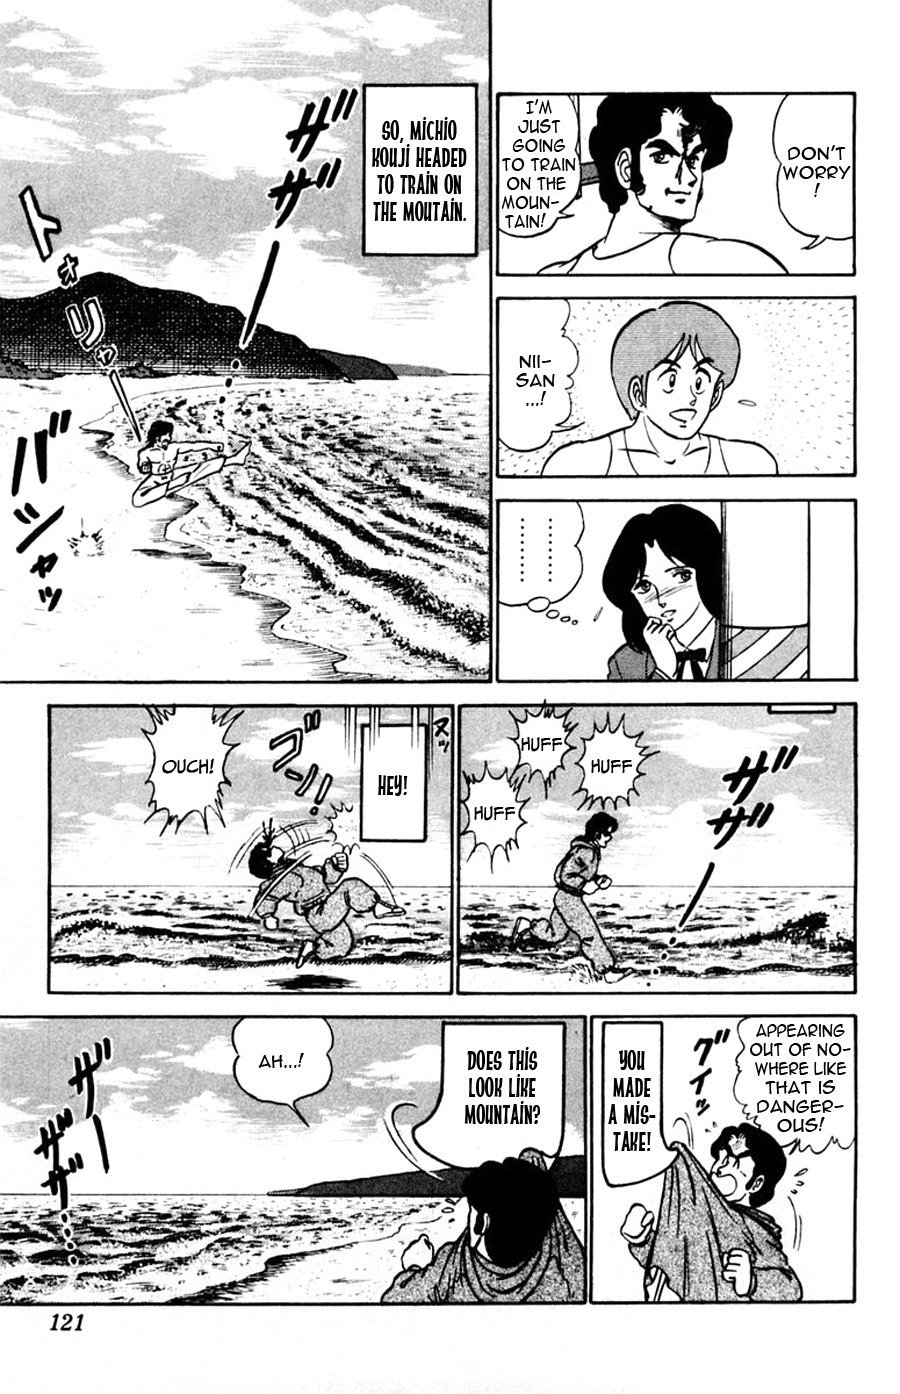 Yuu & Mii Vol. 8 Ch. 47 Michio Kouji's Story (Part 1)